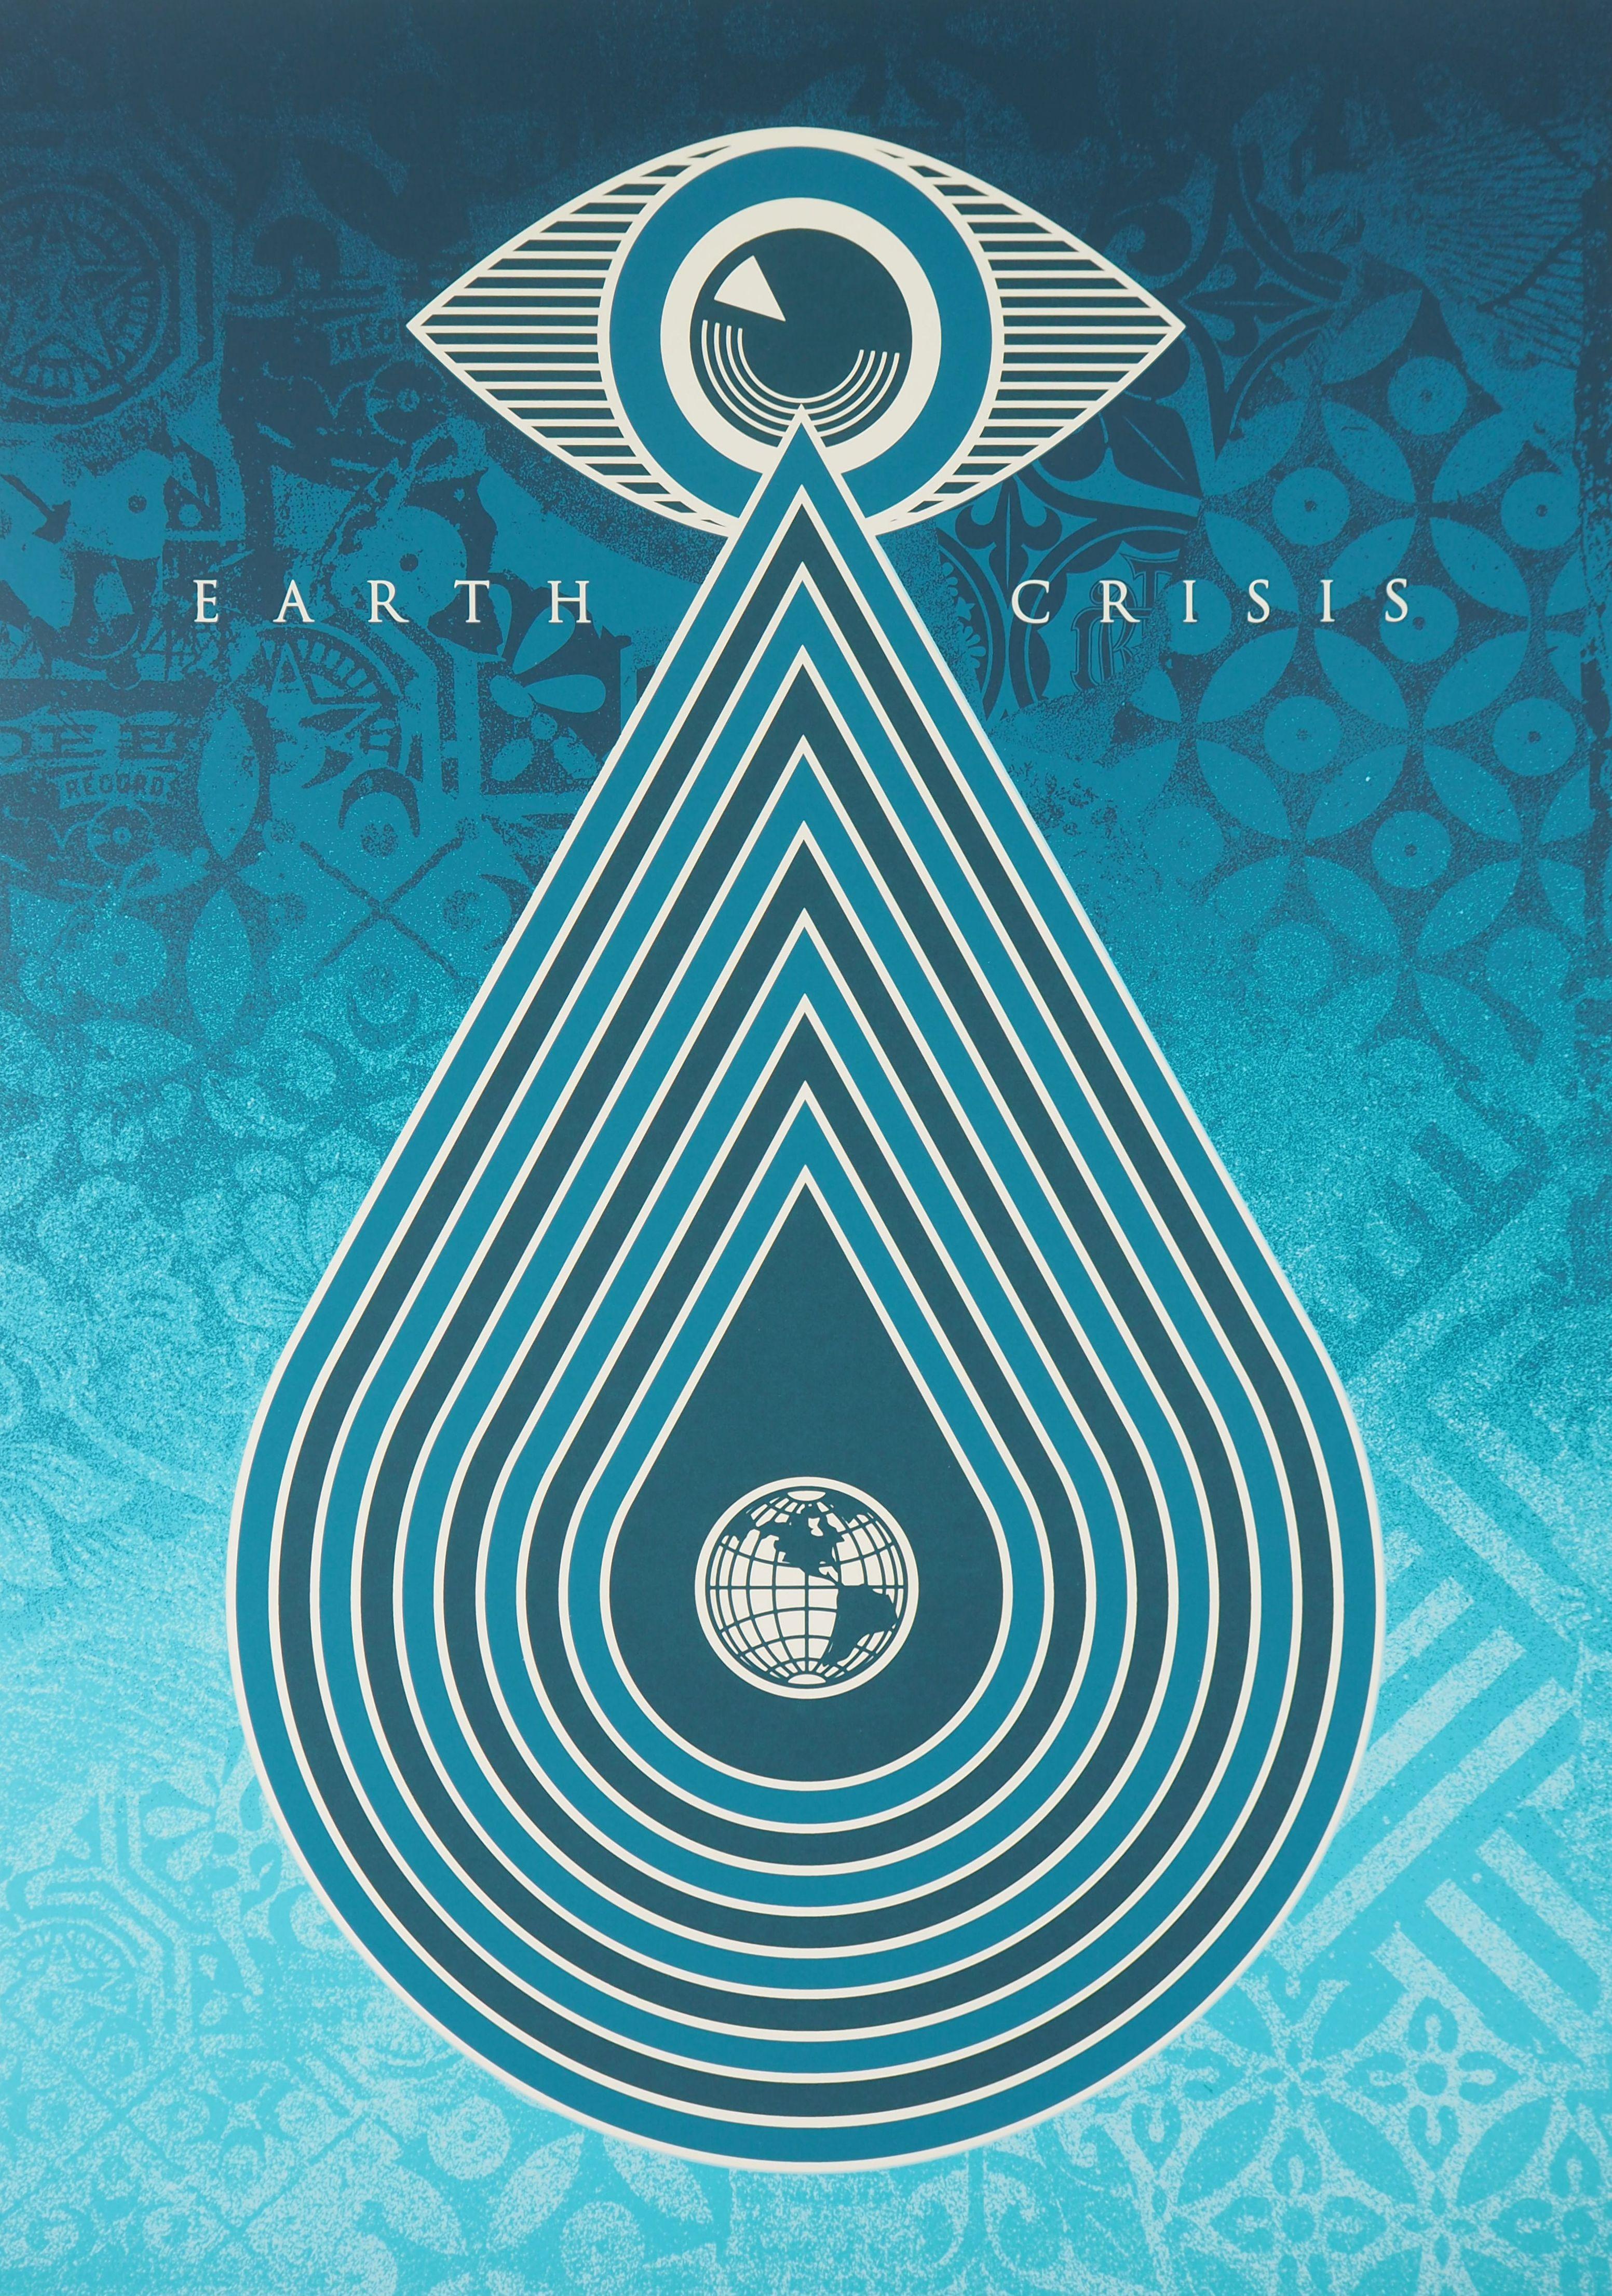 Ökologie: Schutz des Planeten (Krise der Erde) – Großer Siebdruck signiert und nummeriert (Blau), Figurative Print, von Shepard Fairey